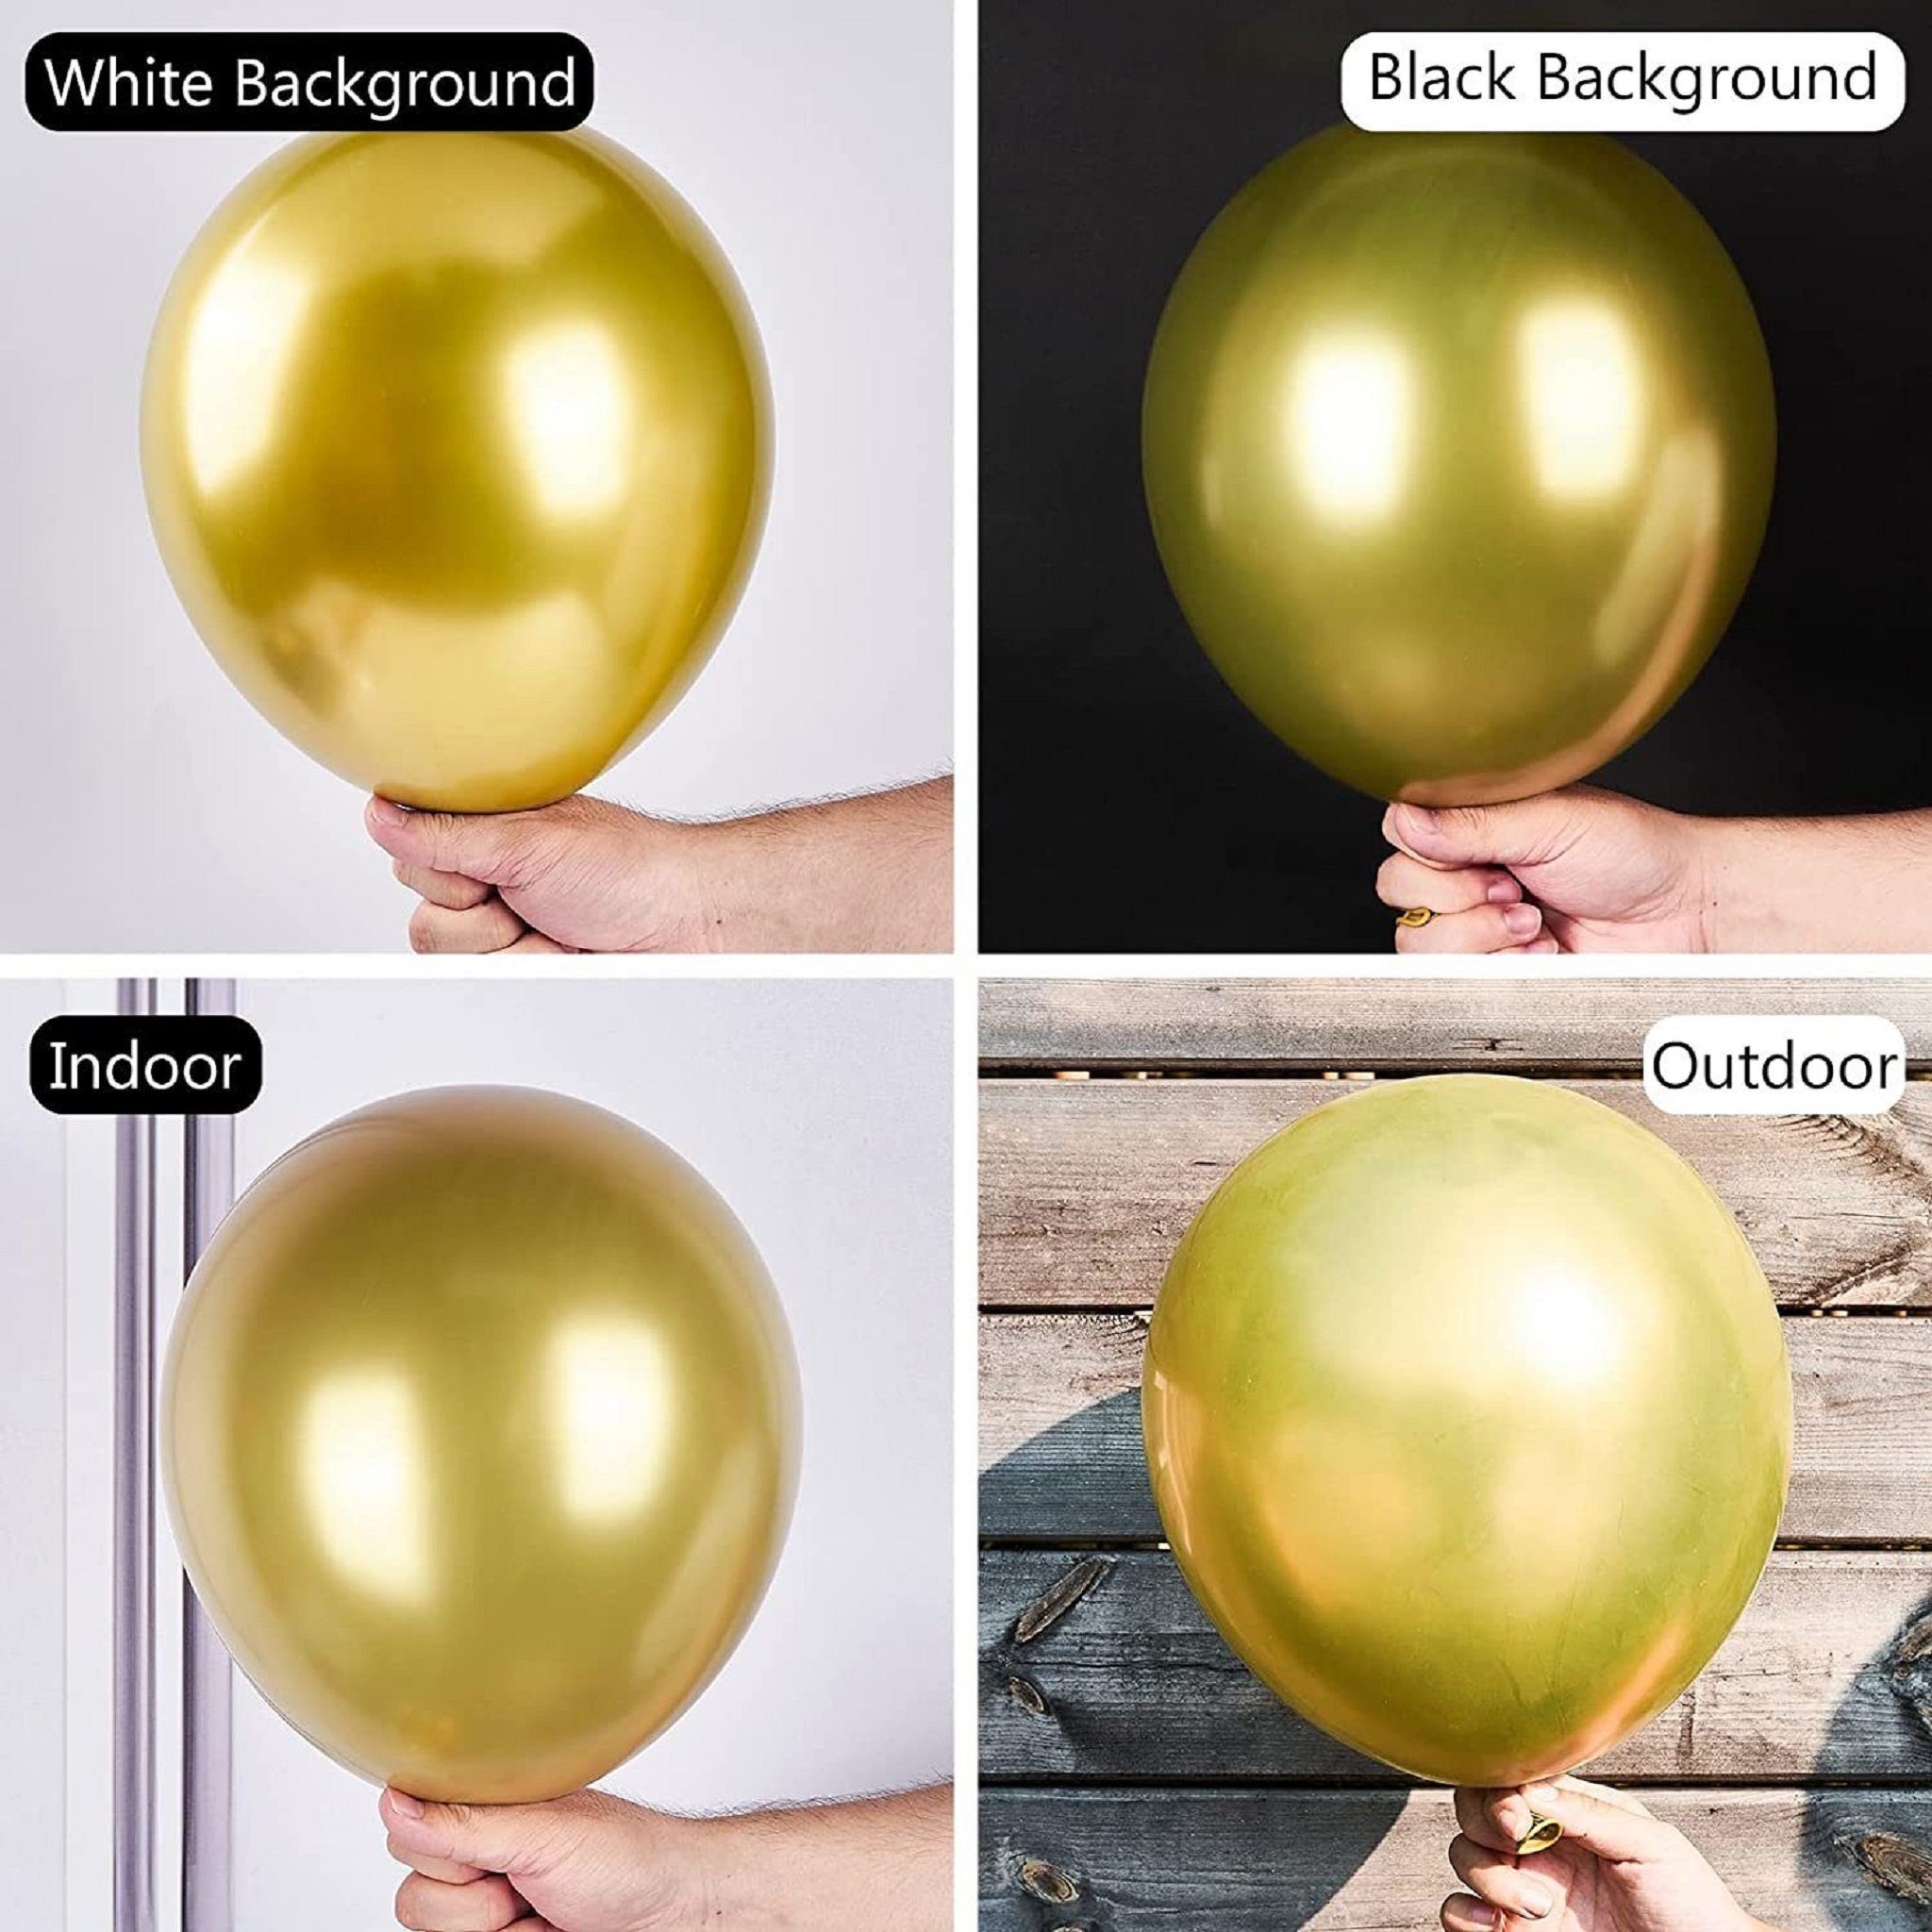 Girlande luftballons für Mutoy Geburtstag Luftballon Weiß Ballons geburtstag,Luftballons Geburtstagsfeier Deko Dekoration, Luftballons Gold Schwarz Helium